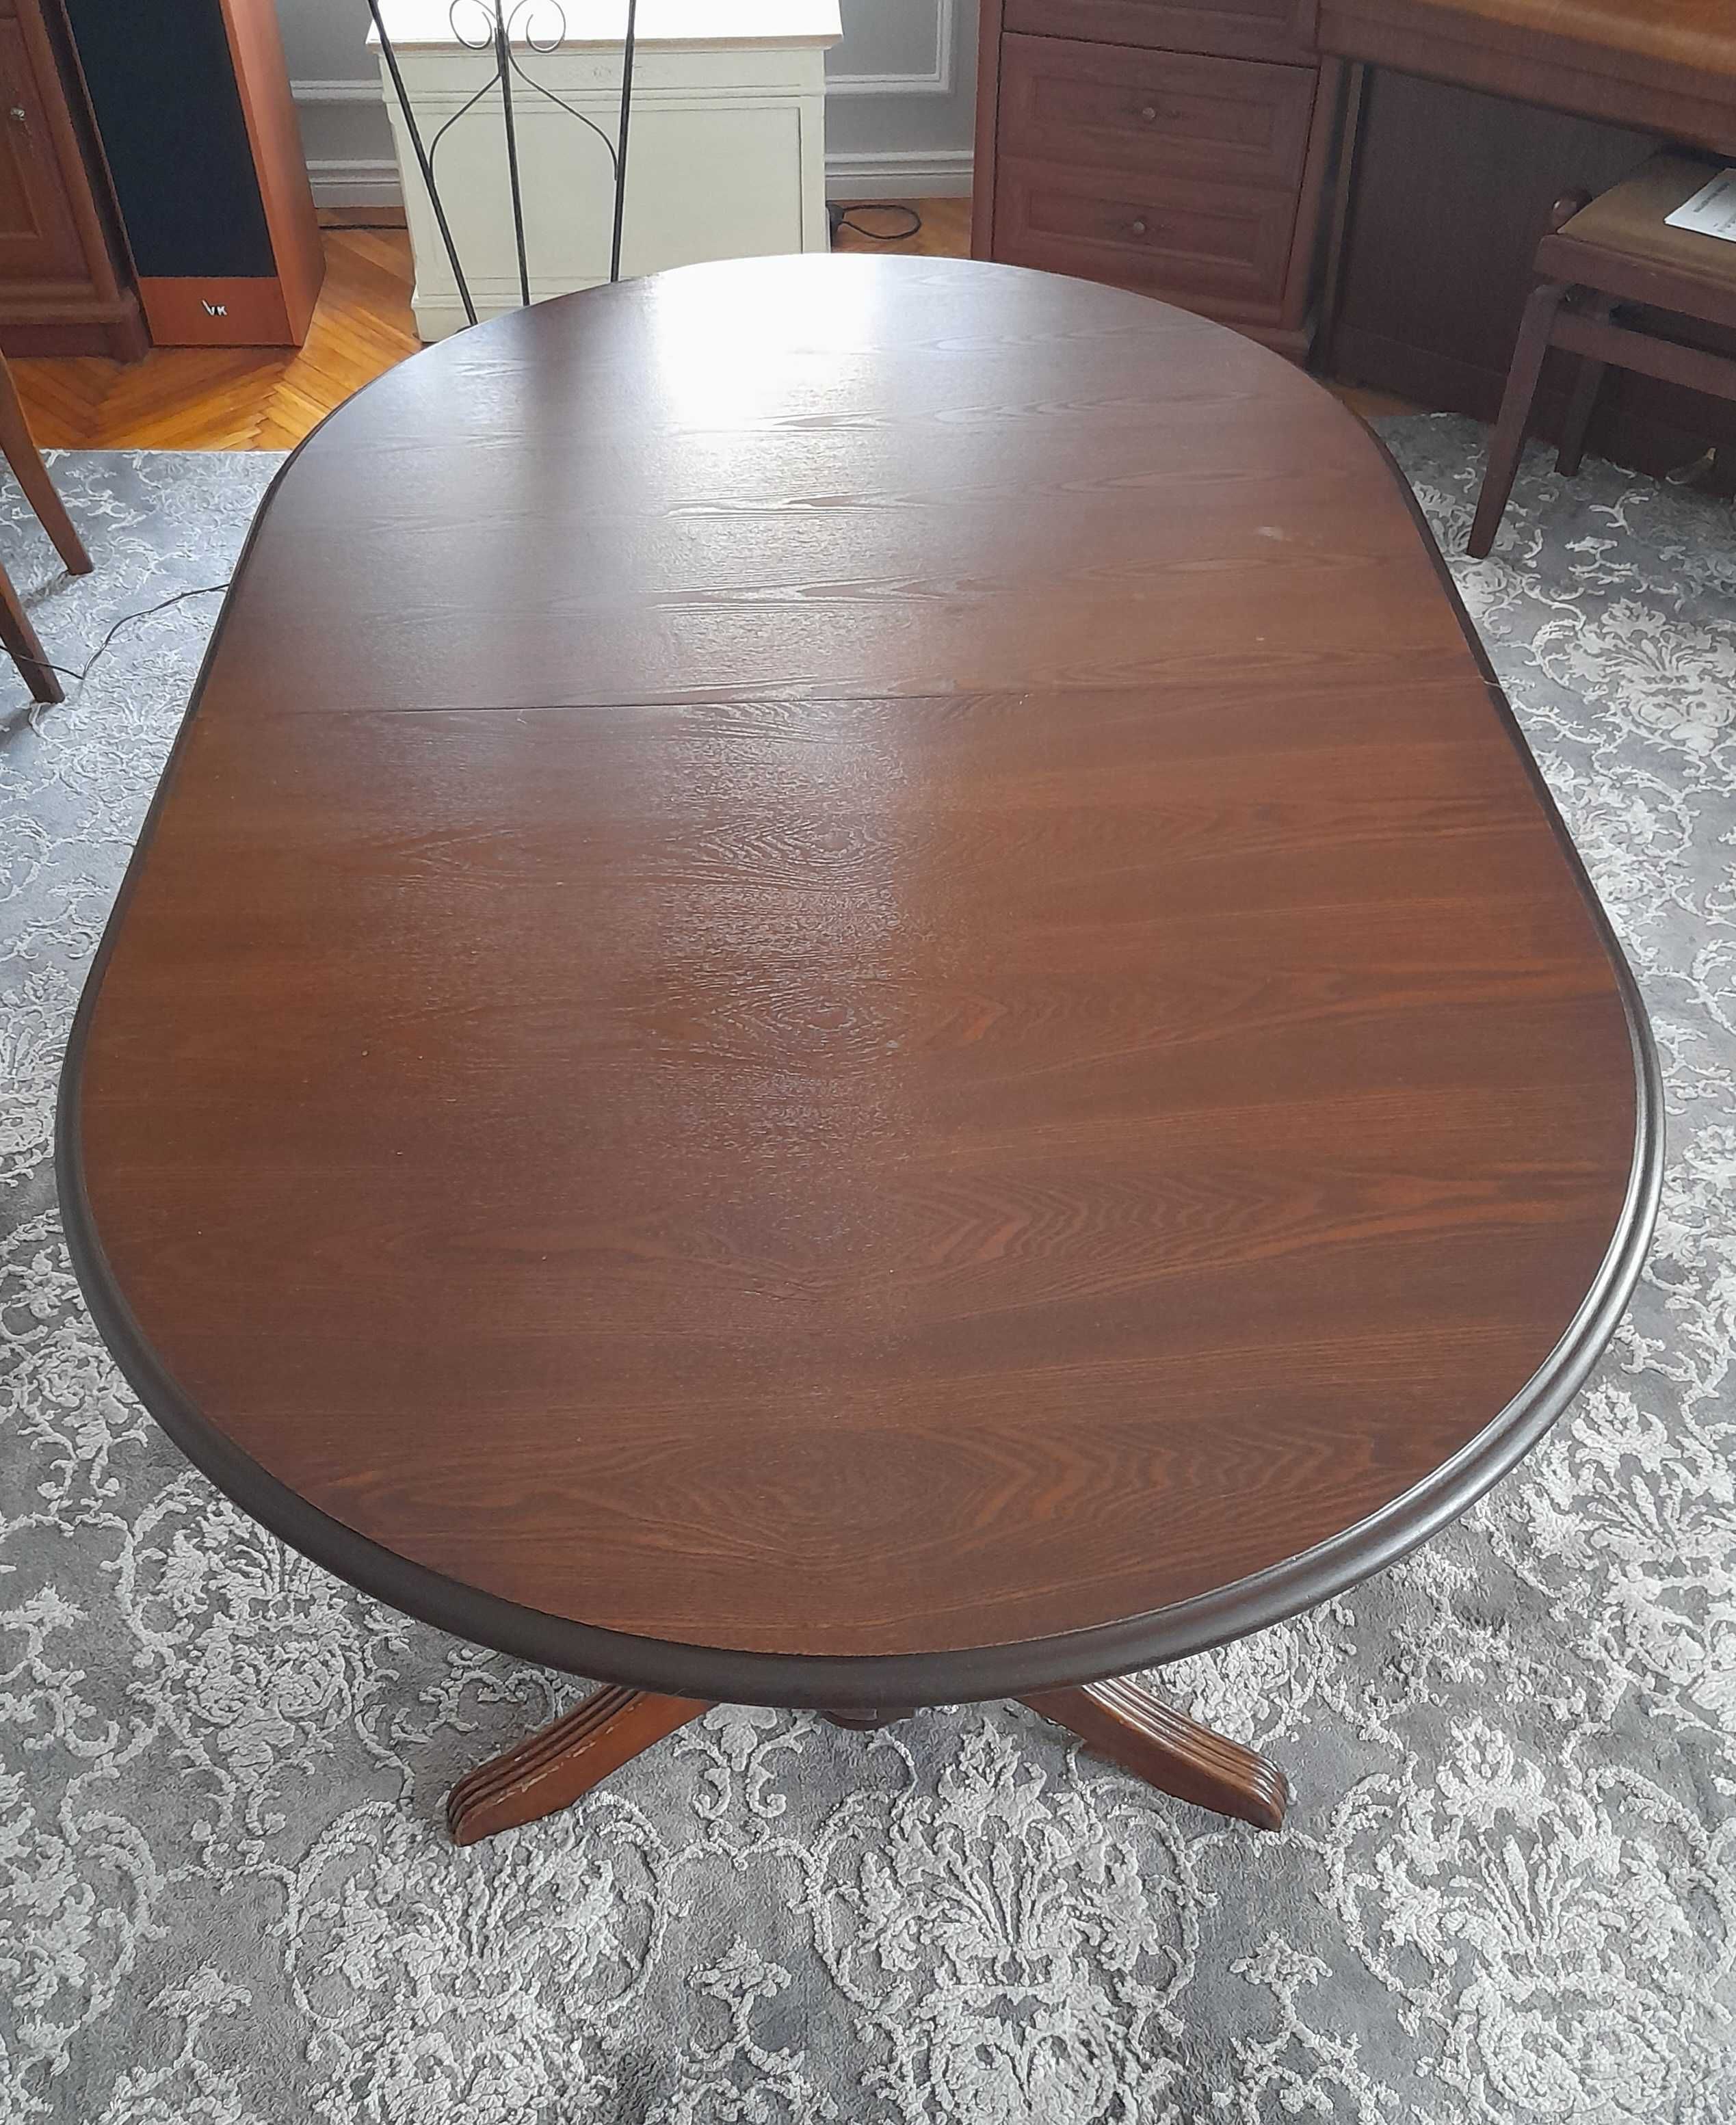 Stół owalny drewniany rozkładany 160cm do 280cm